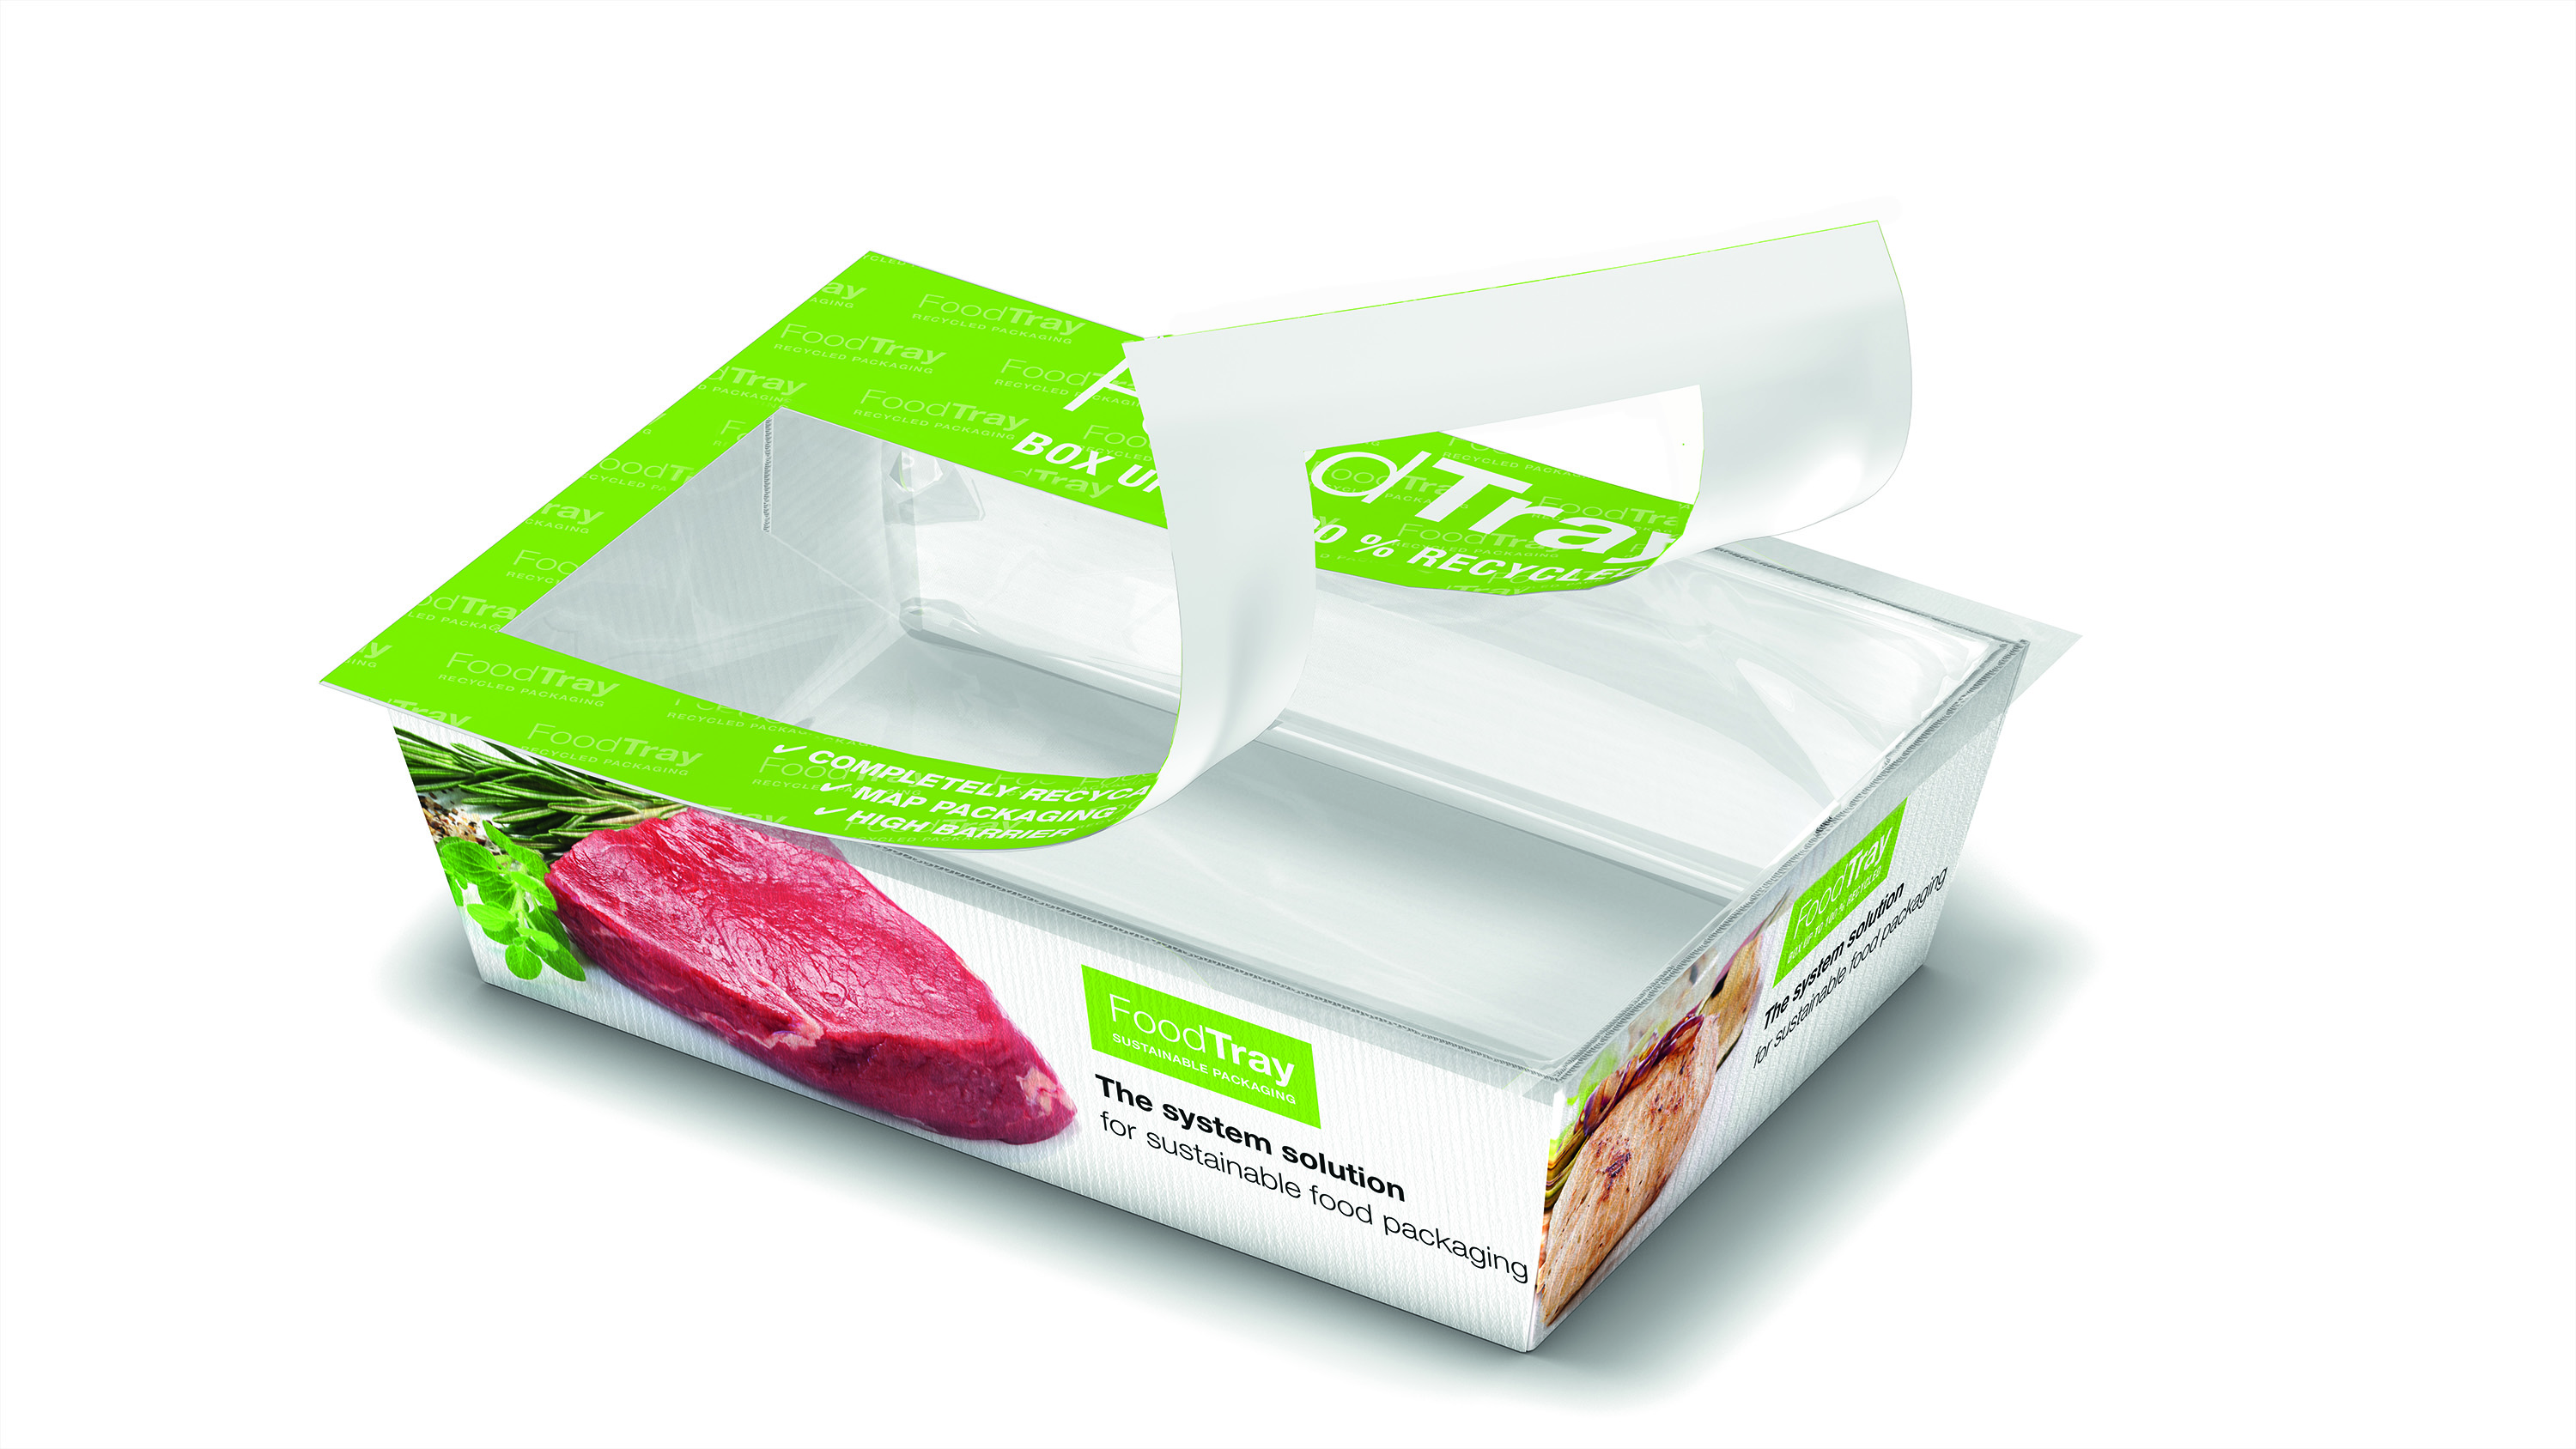 Синтеза упаковка. Упаковка продуктов. Пищевая упаковка. Пластиковая упаковка для пищевых продуктов. Умная упаковка для продуктов.